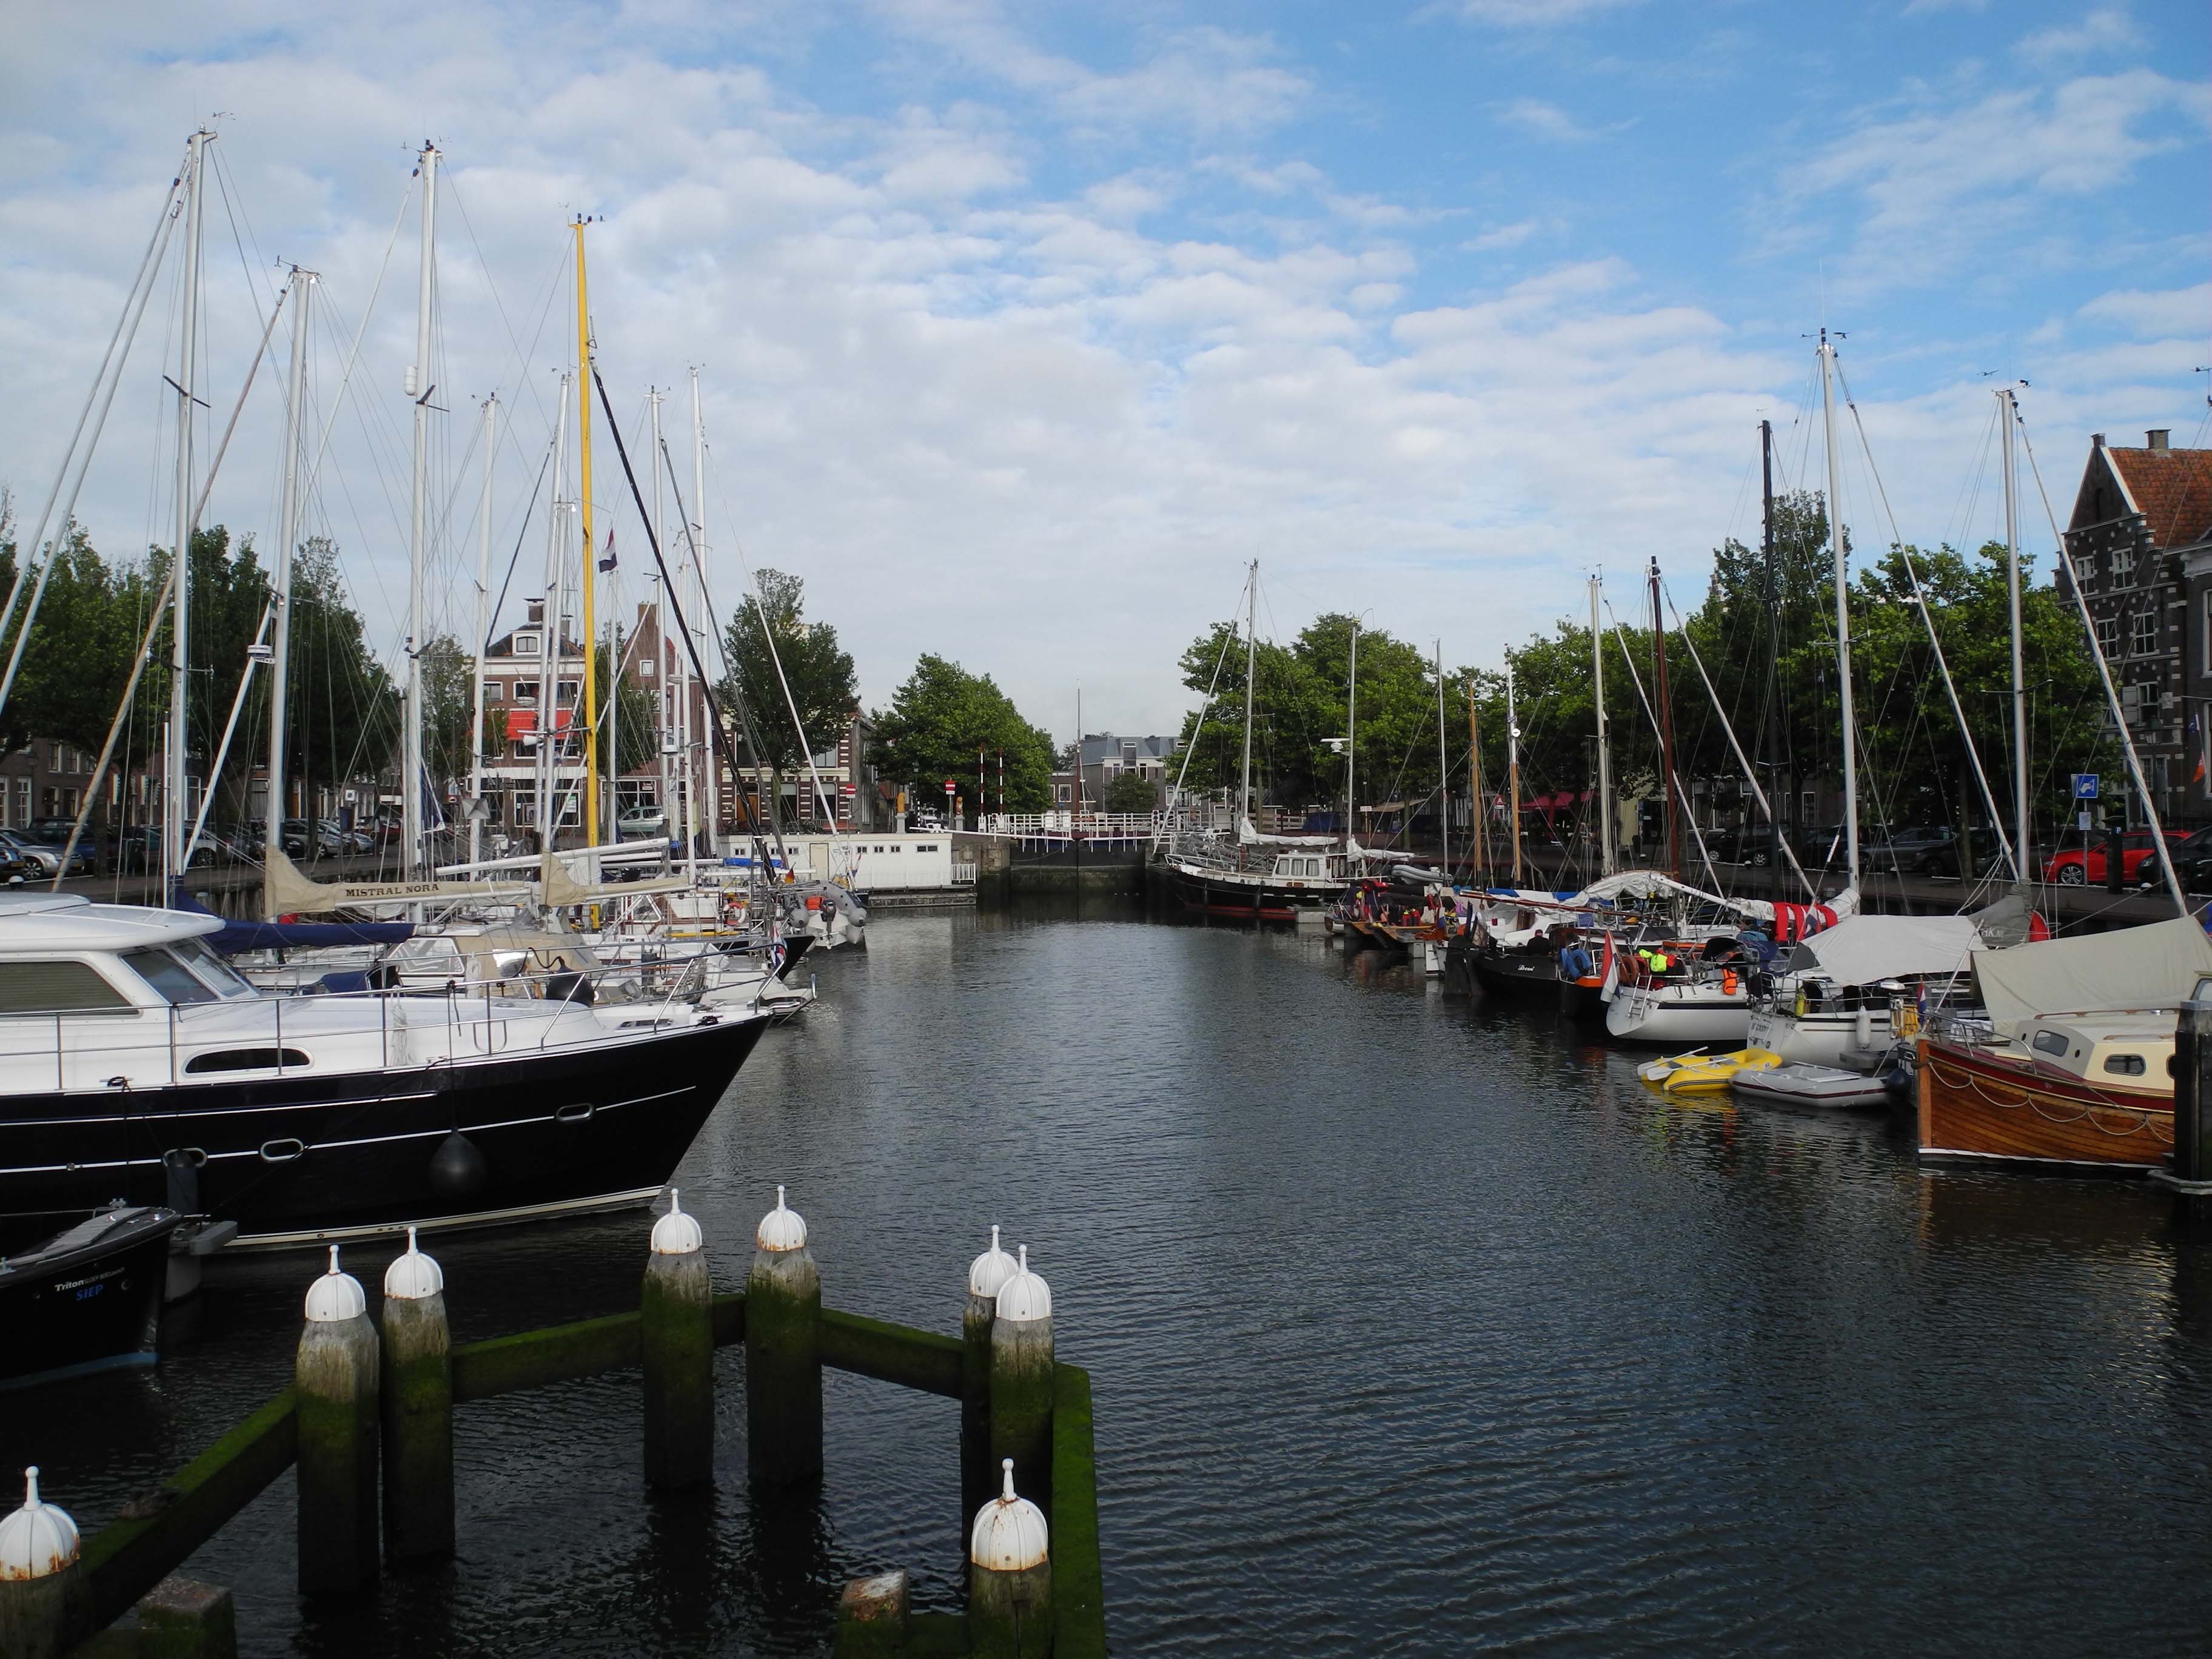 Die Schleuse zum Noorderhaven ist geschlossen, damit bei Springtide zu Hochwasser der Wasserstand im Hafen nicht zu hoch wird. Vom Hafendienst über Kanal 11 erfahren wir, dass wir circa zwei Stunden vor der Schleuse warten müssen.